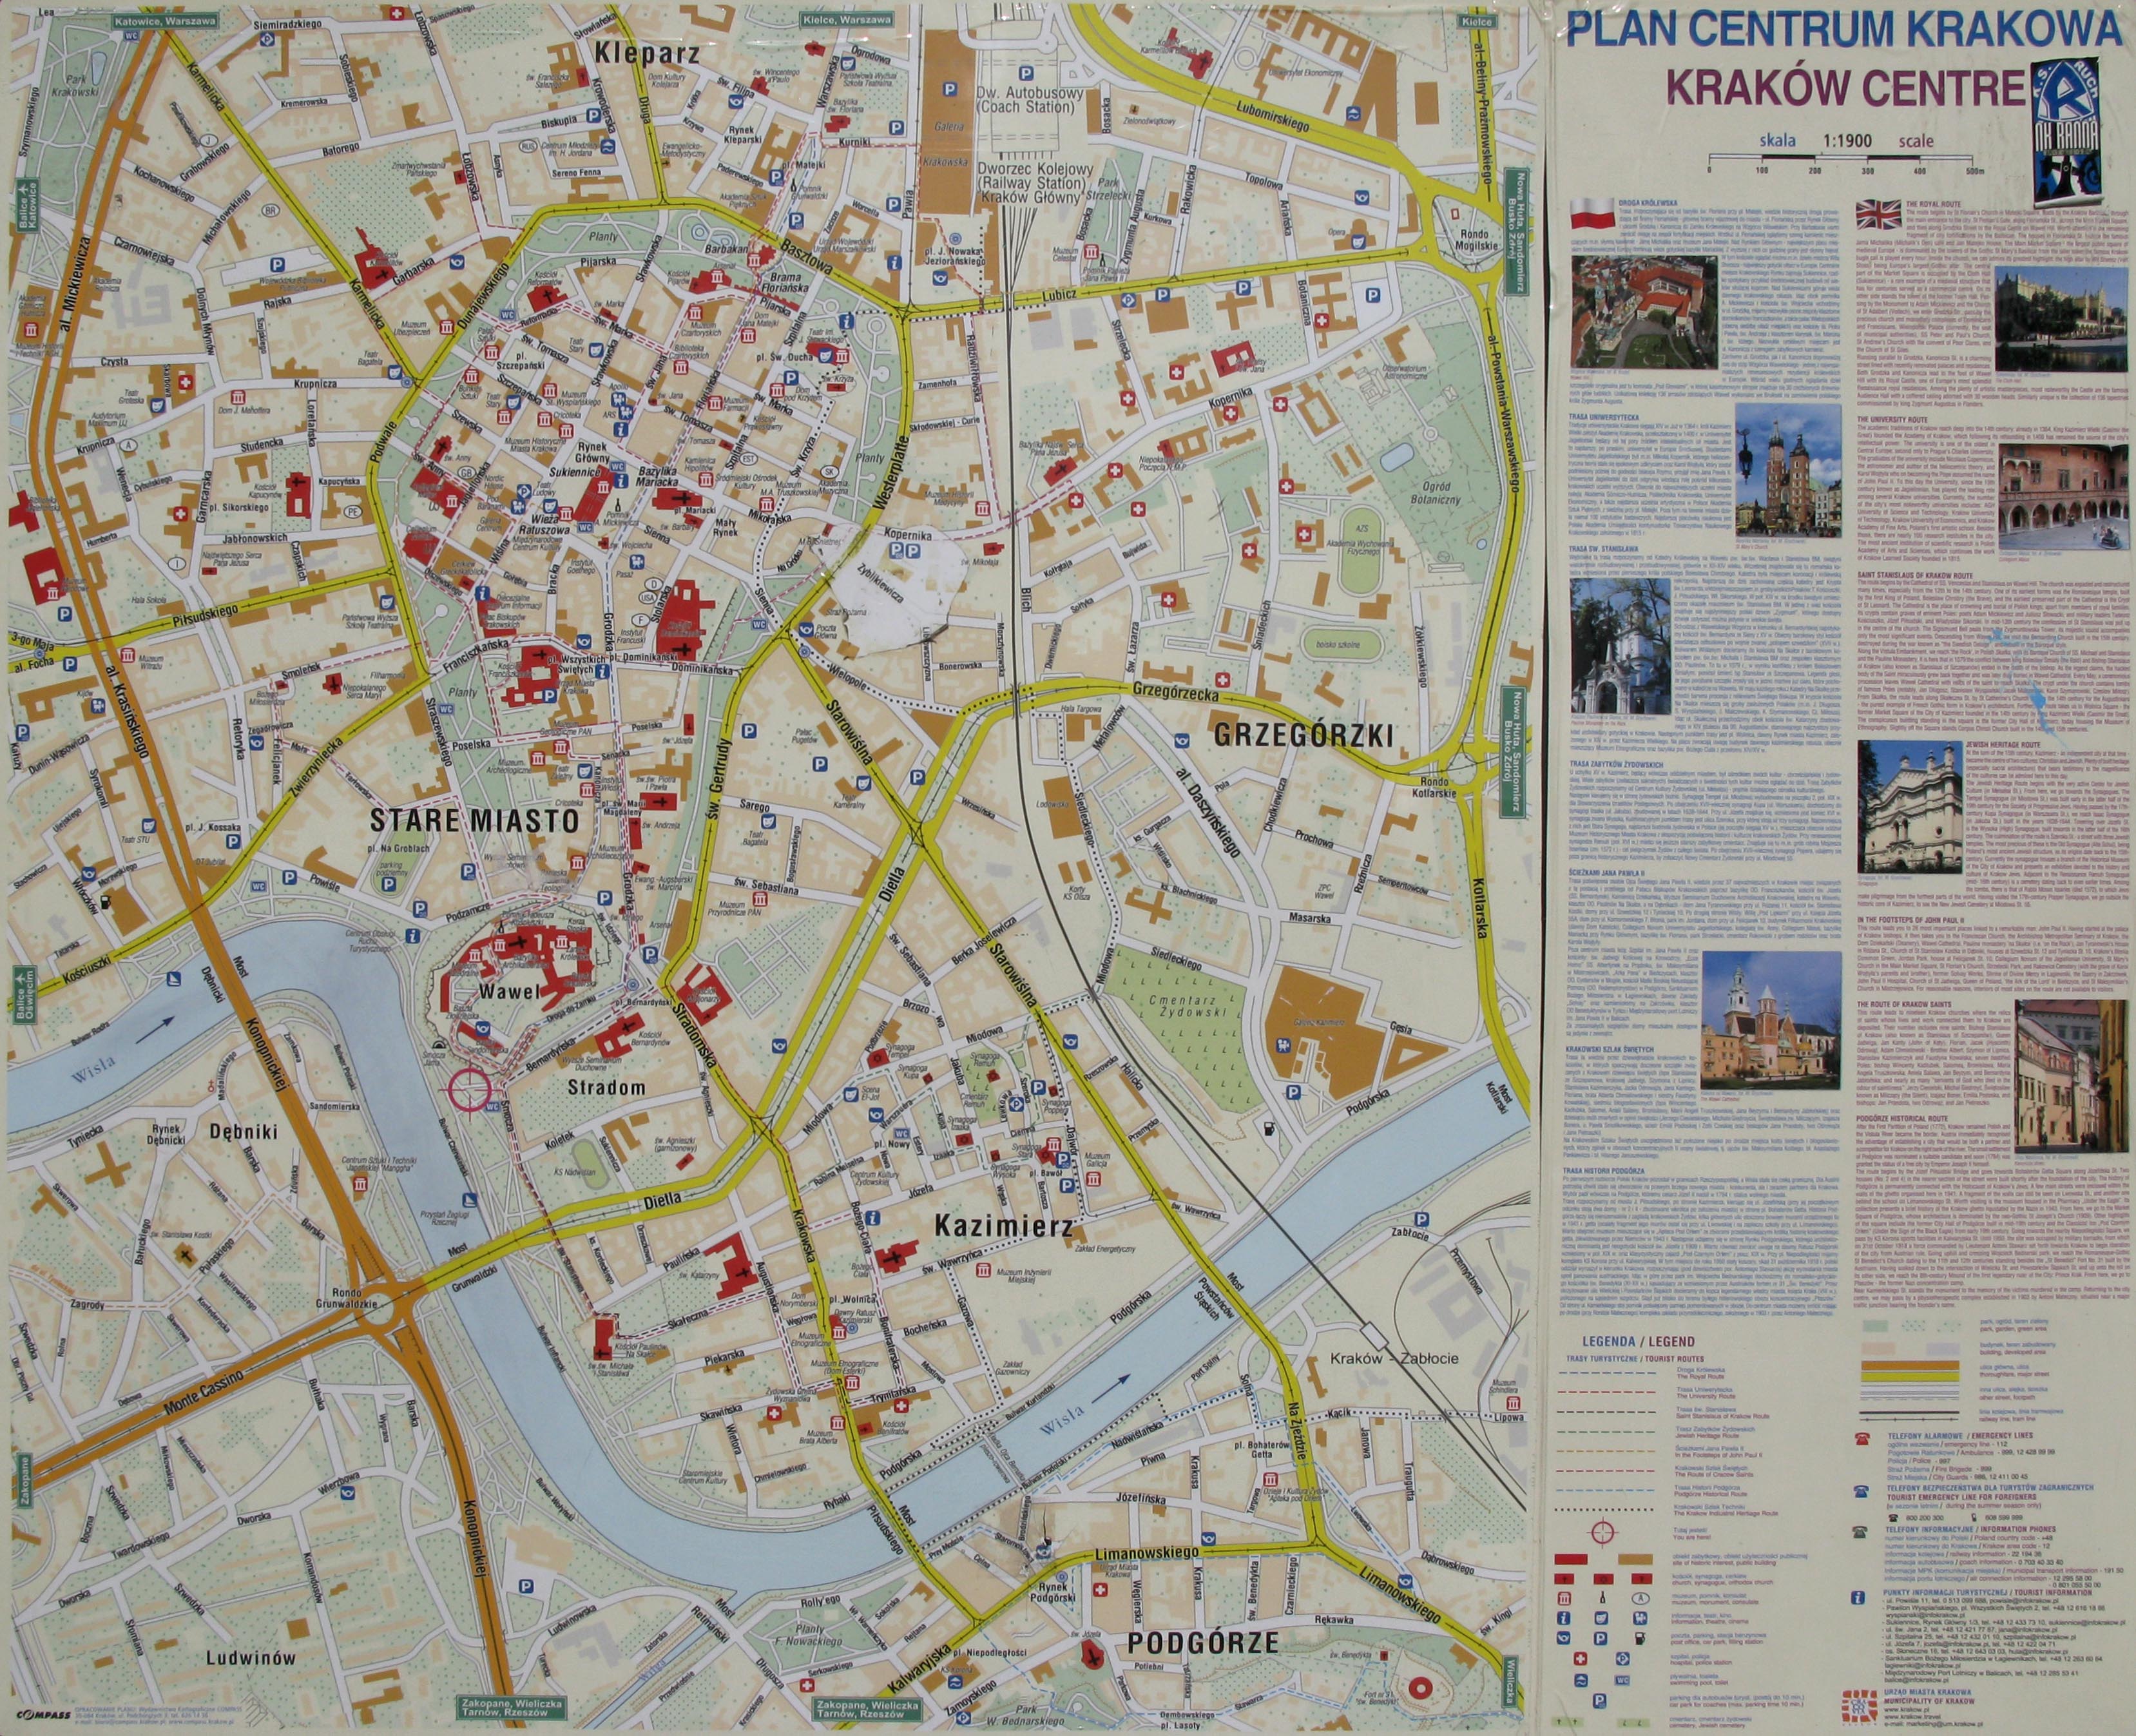 Краков. Фото. Карта-схема центральной части города (Krakow centre).